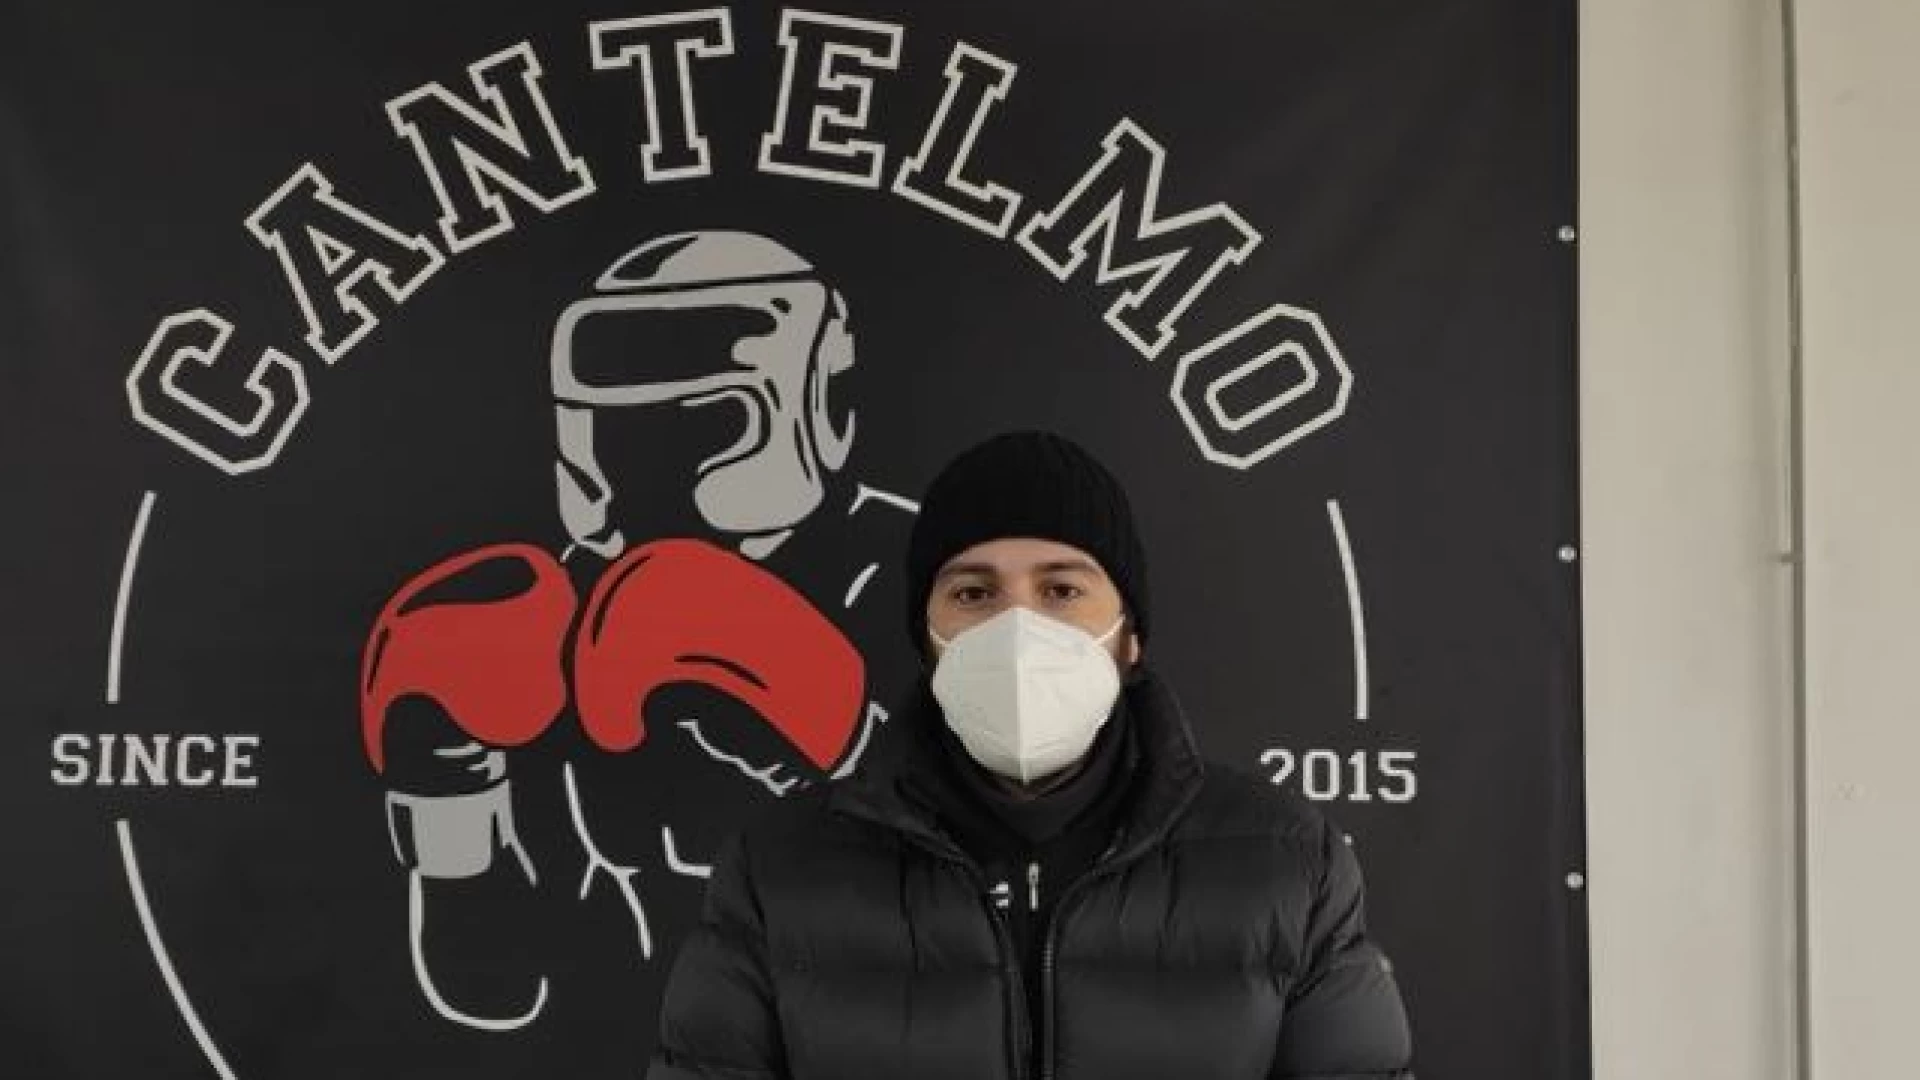 Boxe, intervista esclusiva a Giuseppe Cantelmo della Counter Punch Boxing Club di Isernia. “Pronti per un 2021 di grandi sorprese”. Guarda il servizio.